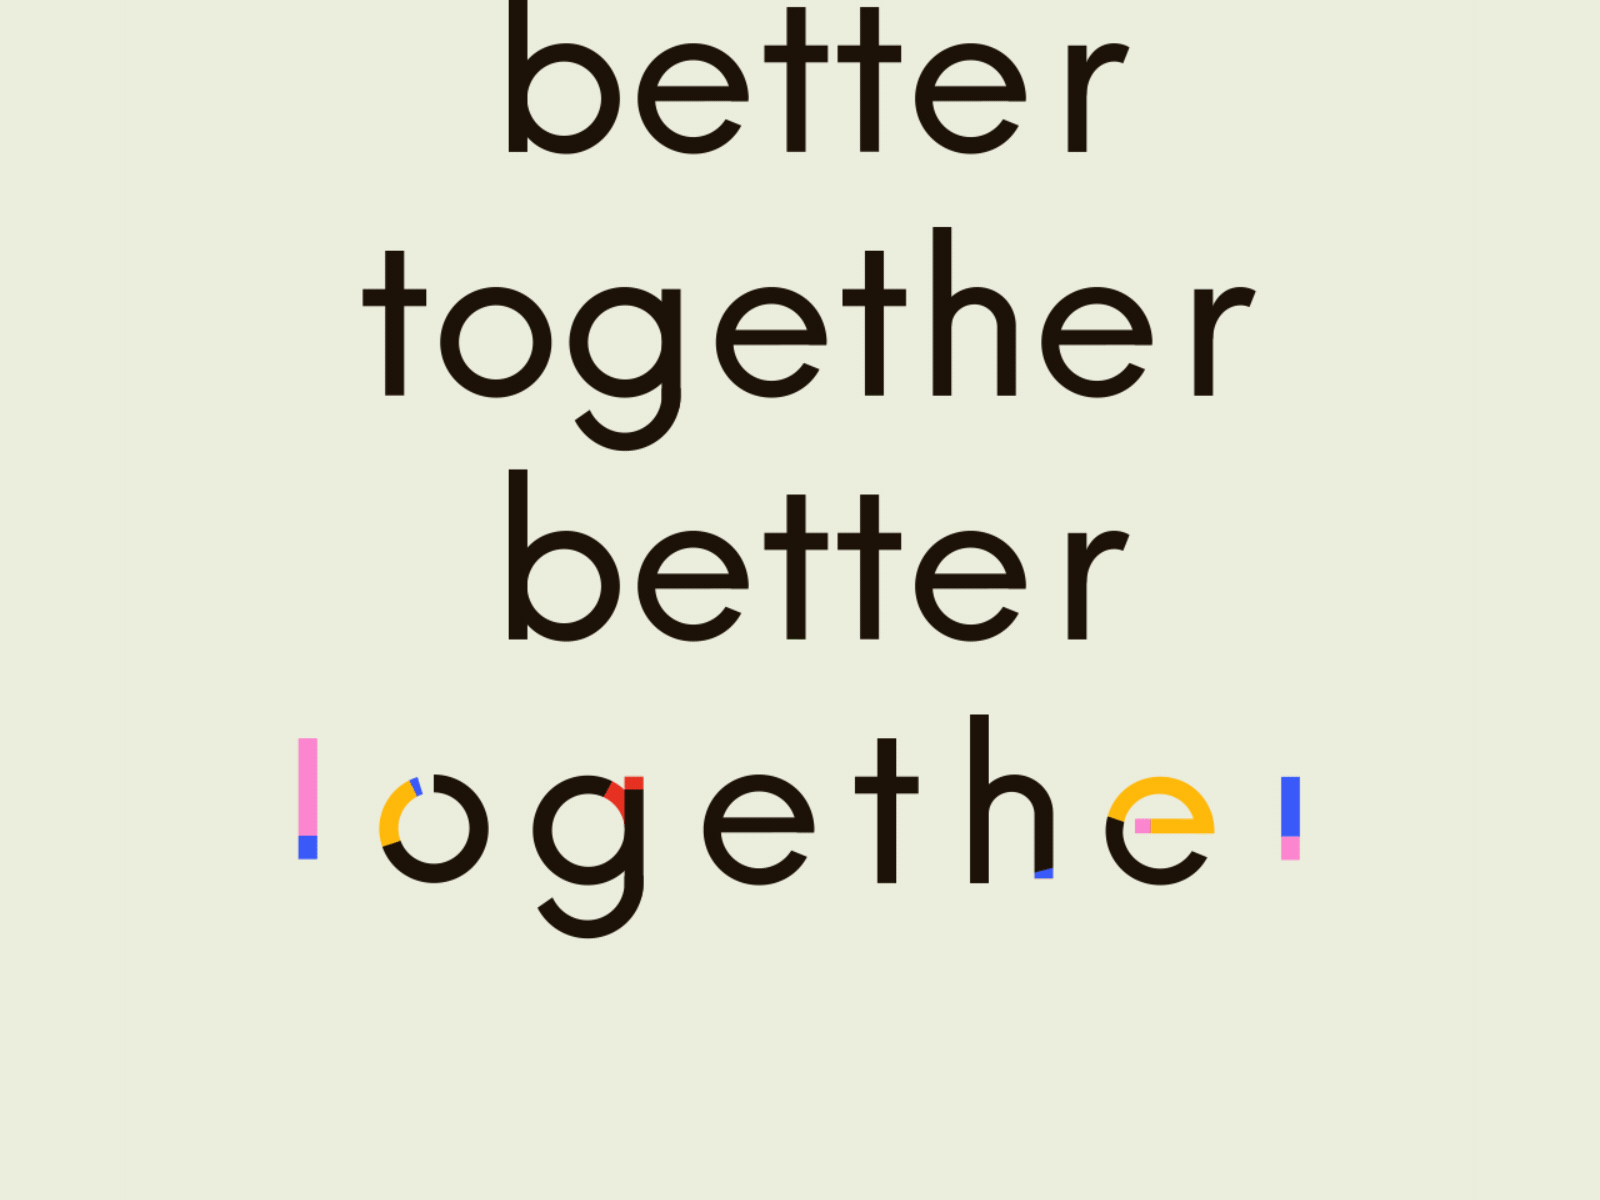 Better together.